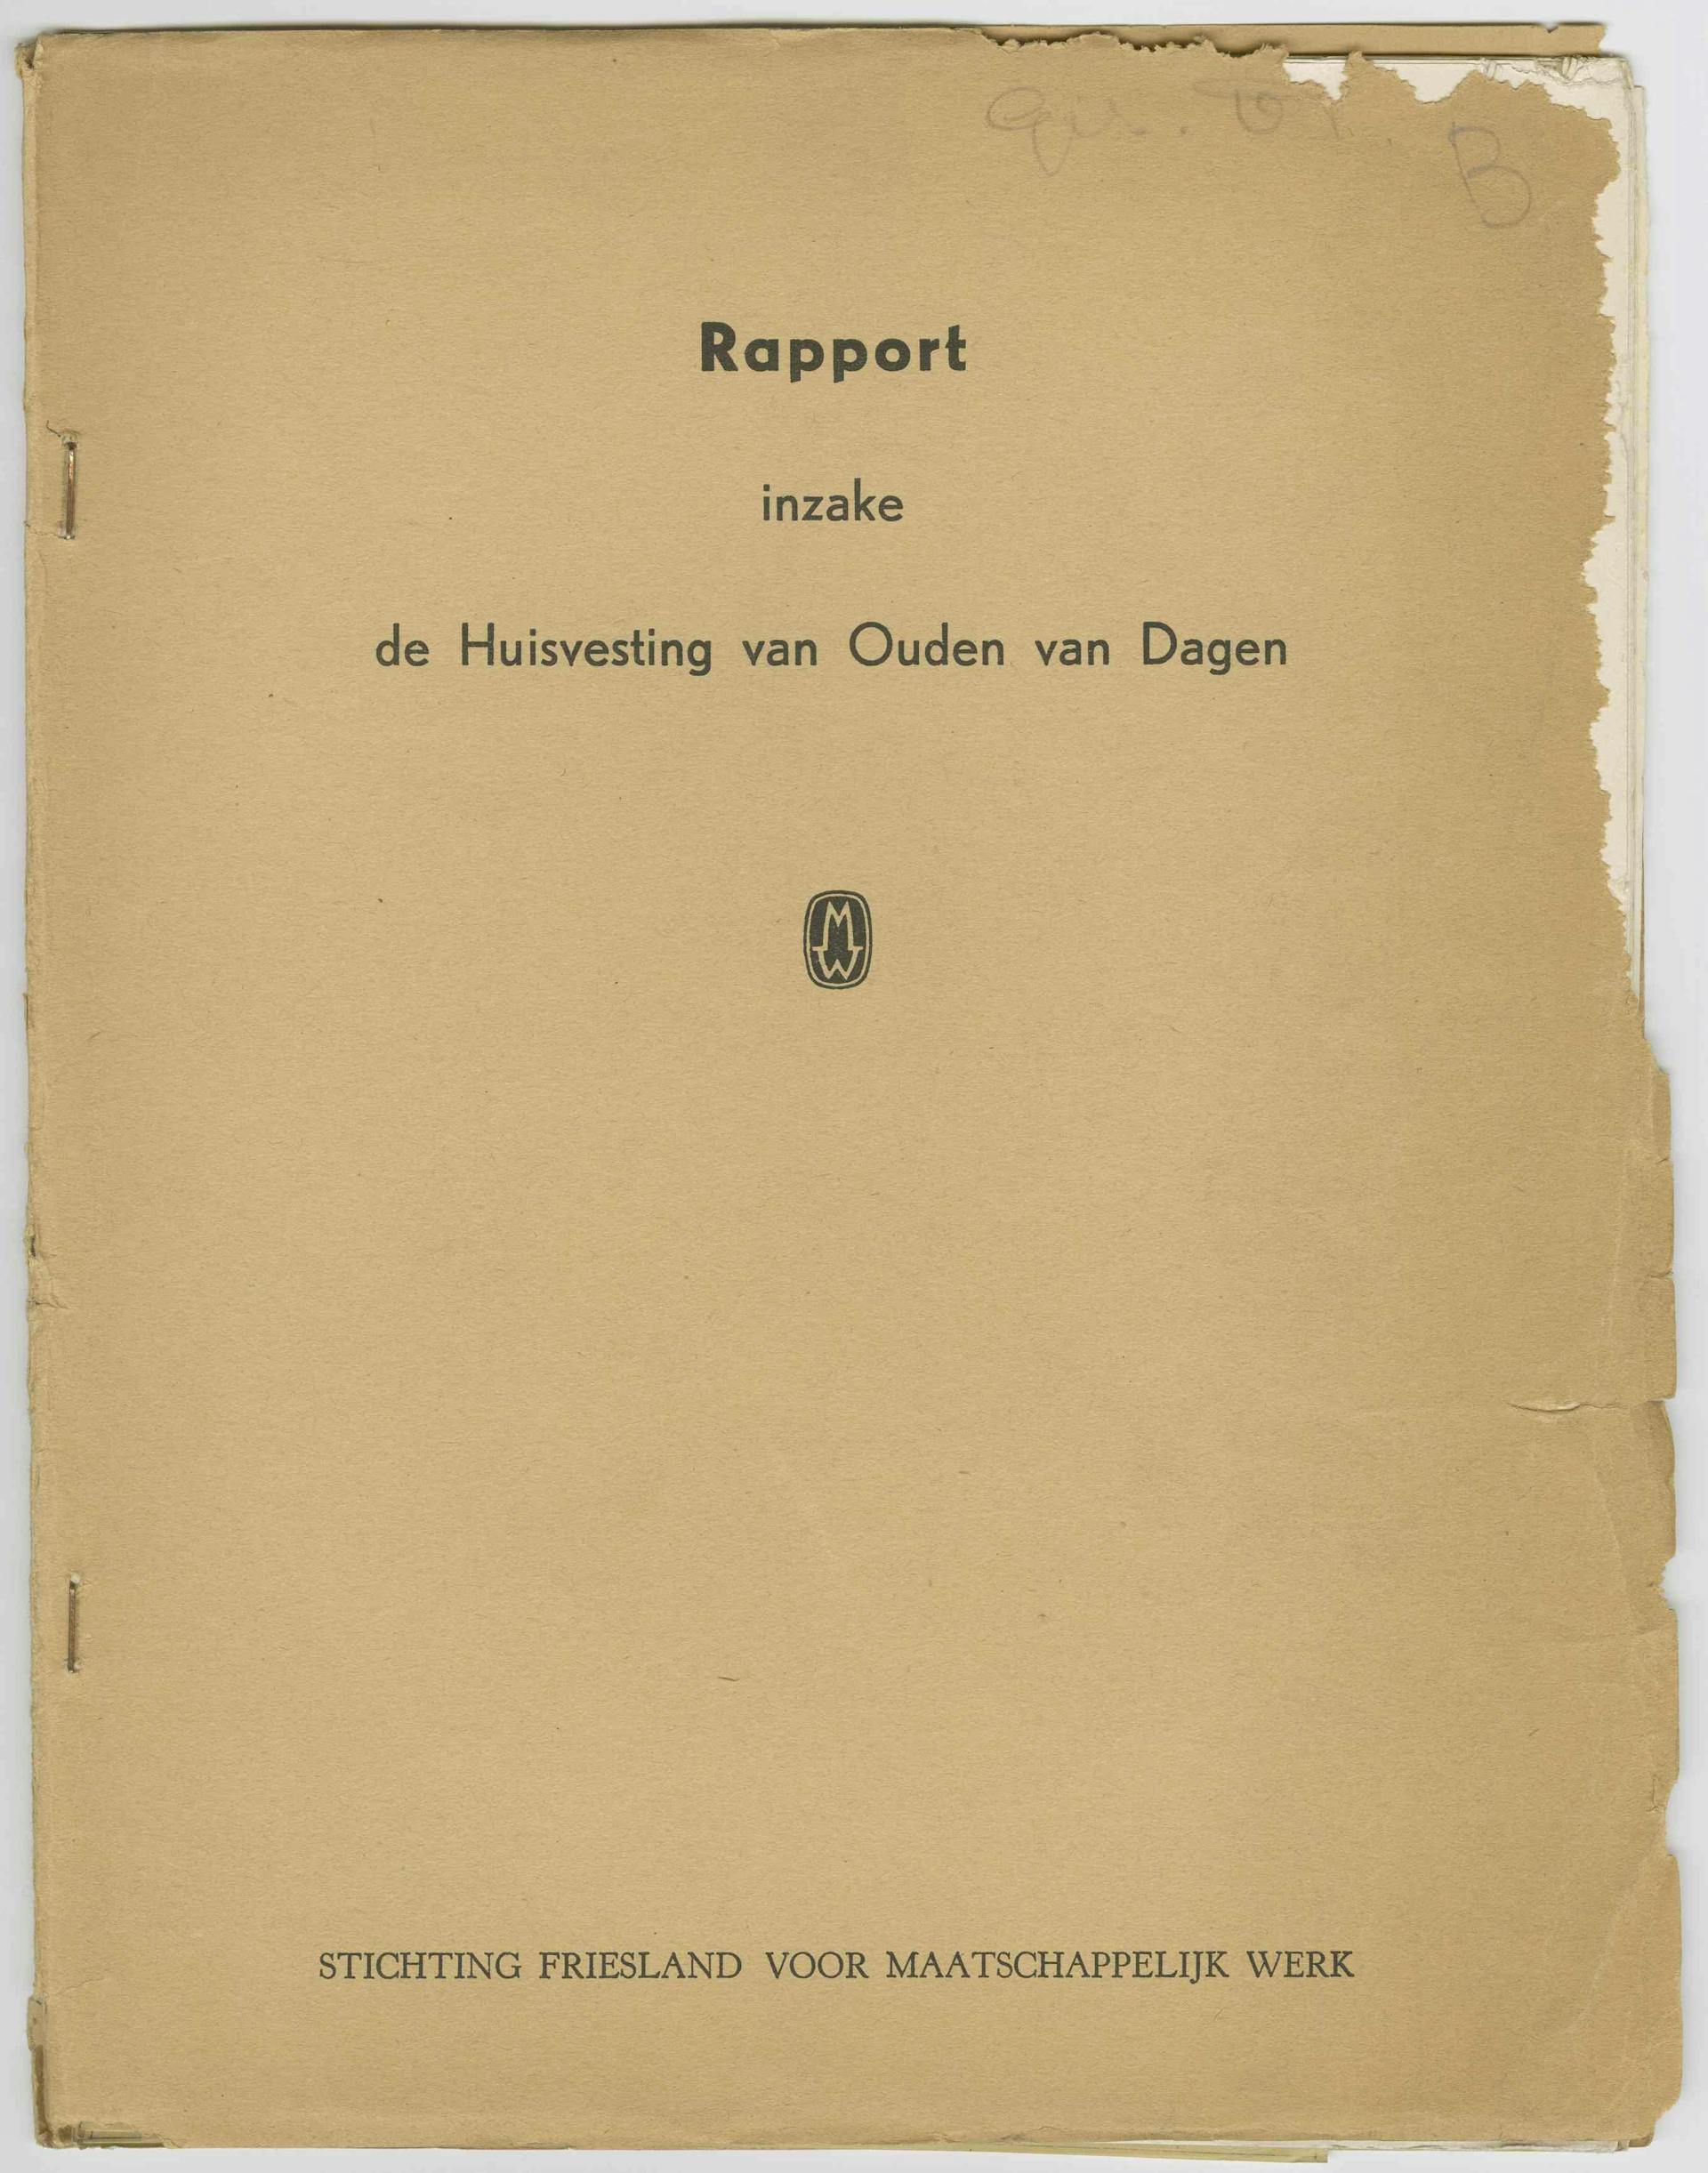  Stichting Friesland voor Maatschappelijk Werk. Rapport inzake de Huisvesting van Ouden van Dagen, 1951. Collectie Het Nieuwe Instituut, TIJX d39-d 